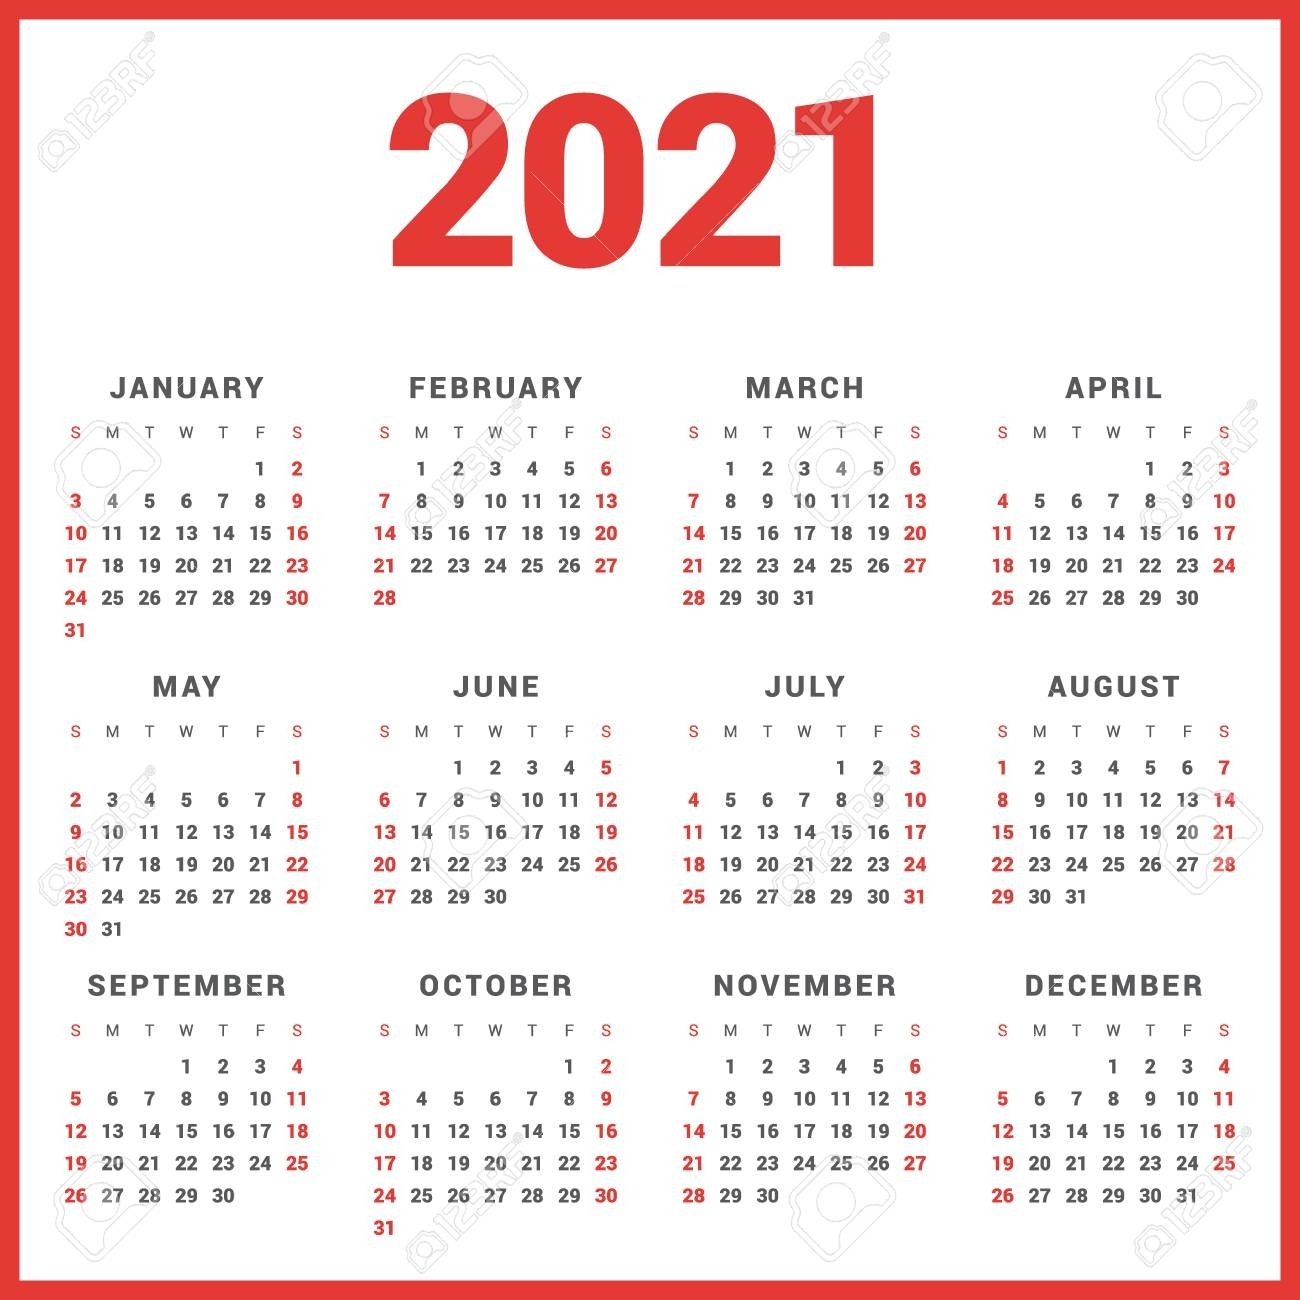 Calendario Para 2021 Años En El Fondo Blanco. La Semana inside Calendario Del 2021 Con Semanas